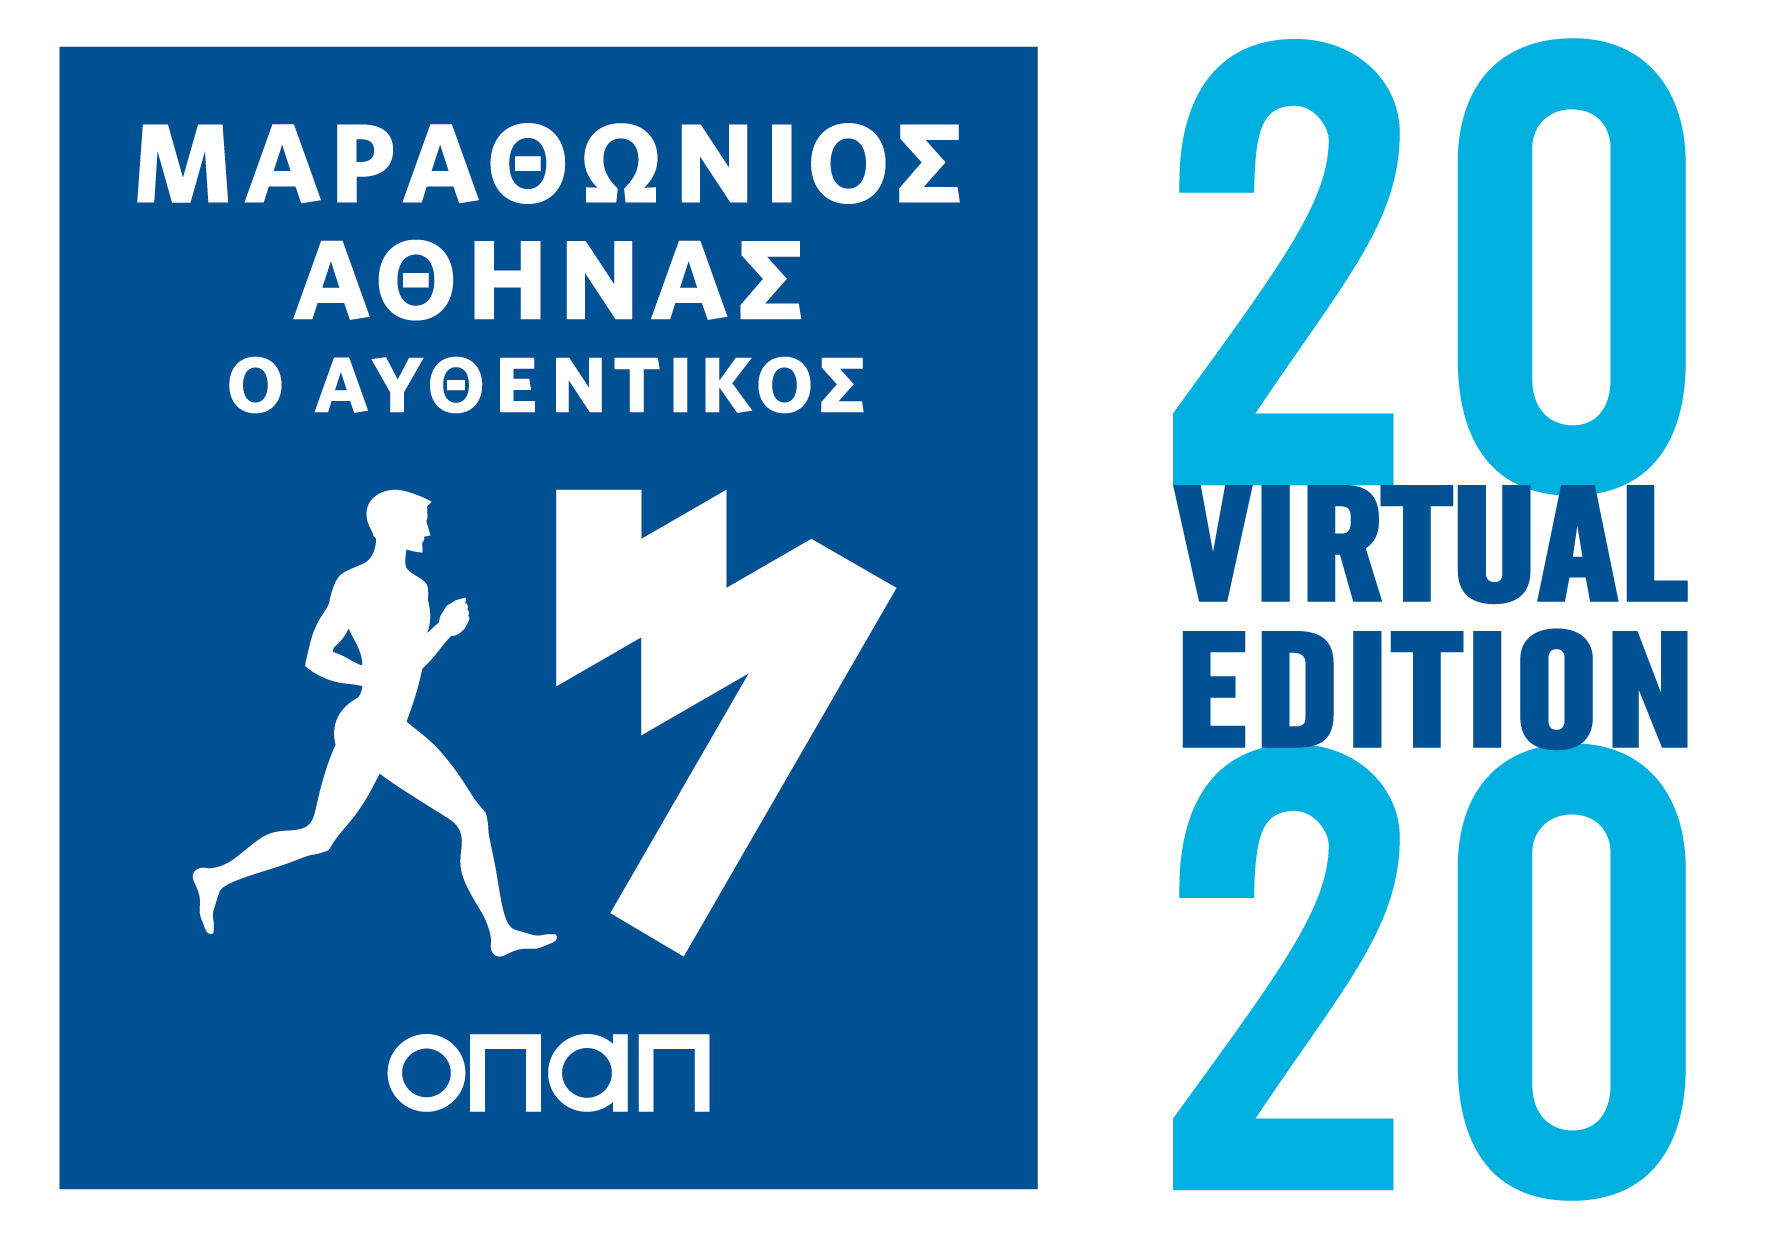 Εκκίνηση στις 8 Νοεμβρίου για τον Virtual Μαραθώνιο Αθήνας με Μεγάλο Χορηγό τoν ΟΠΑΠ